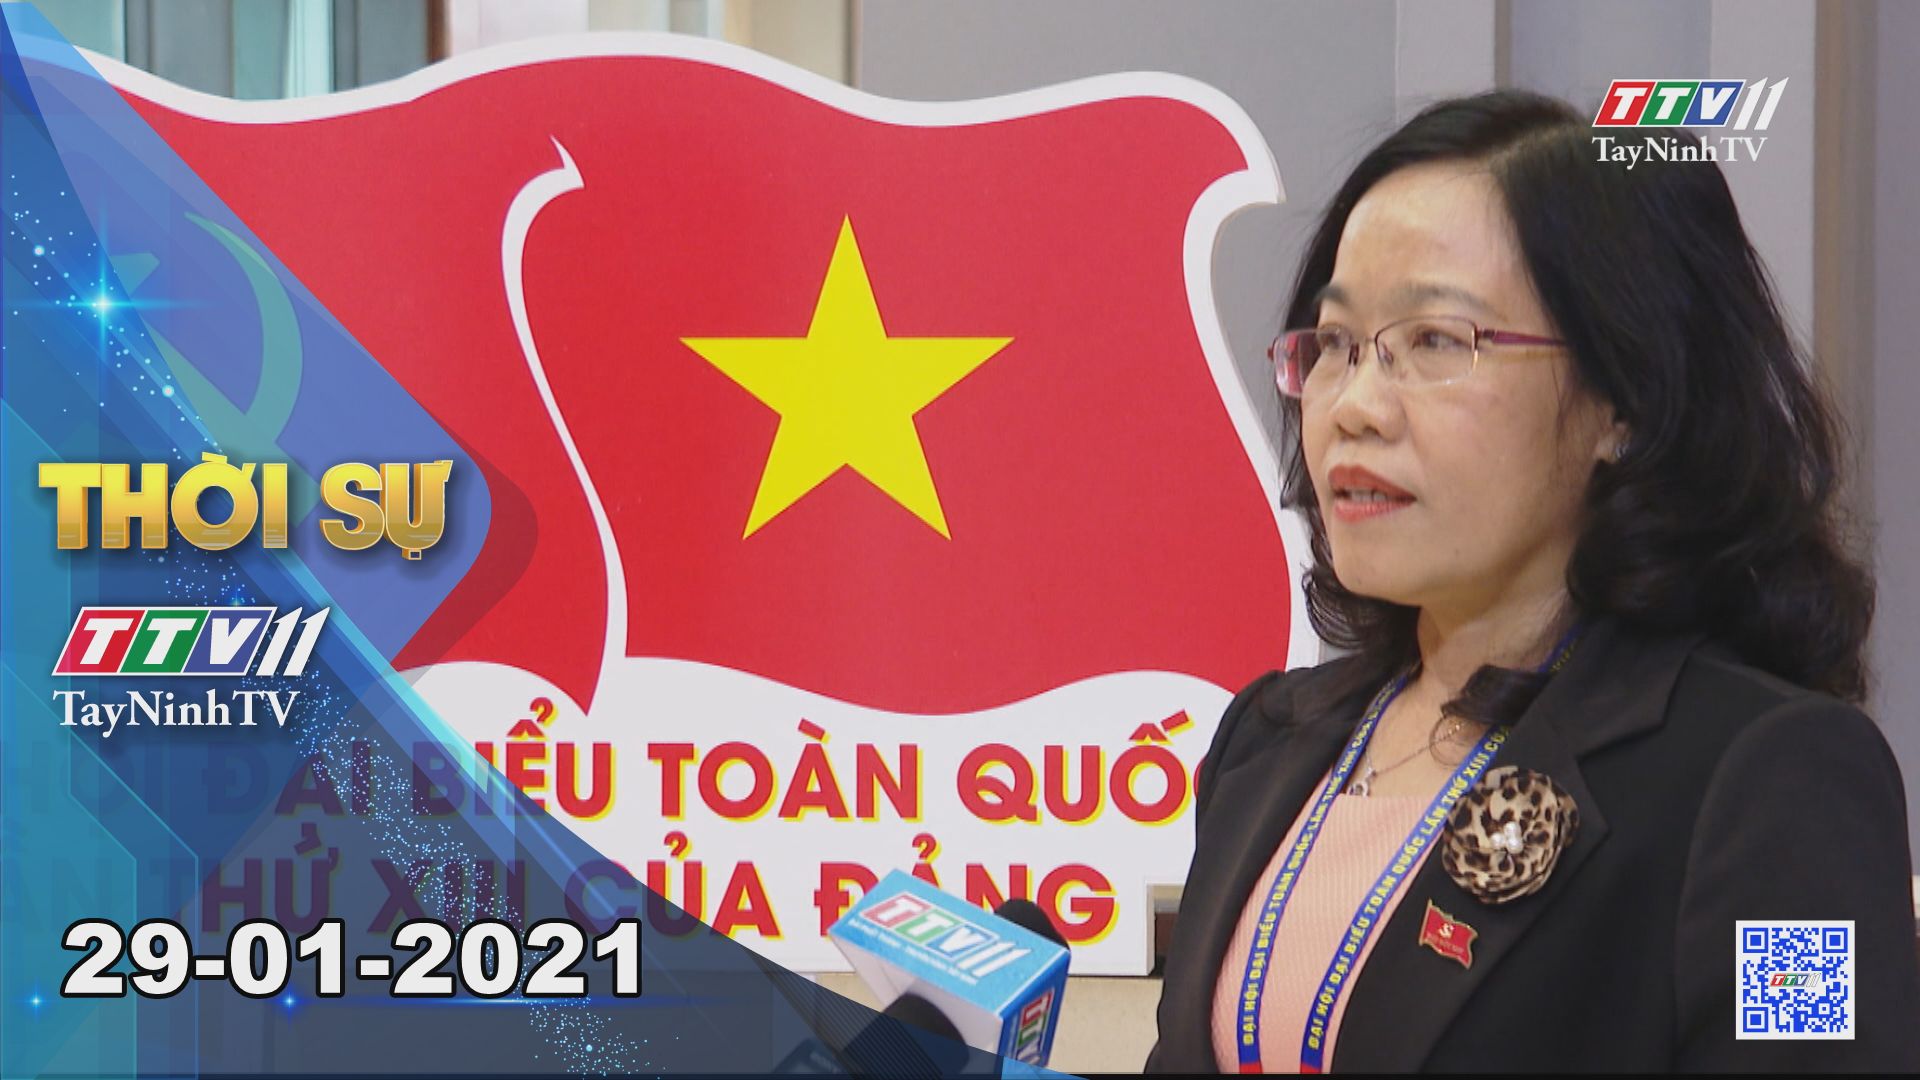 Thời sự Tây Ninh 29-01-2021 | Tin tức hôm nay | TayNinhTV